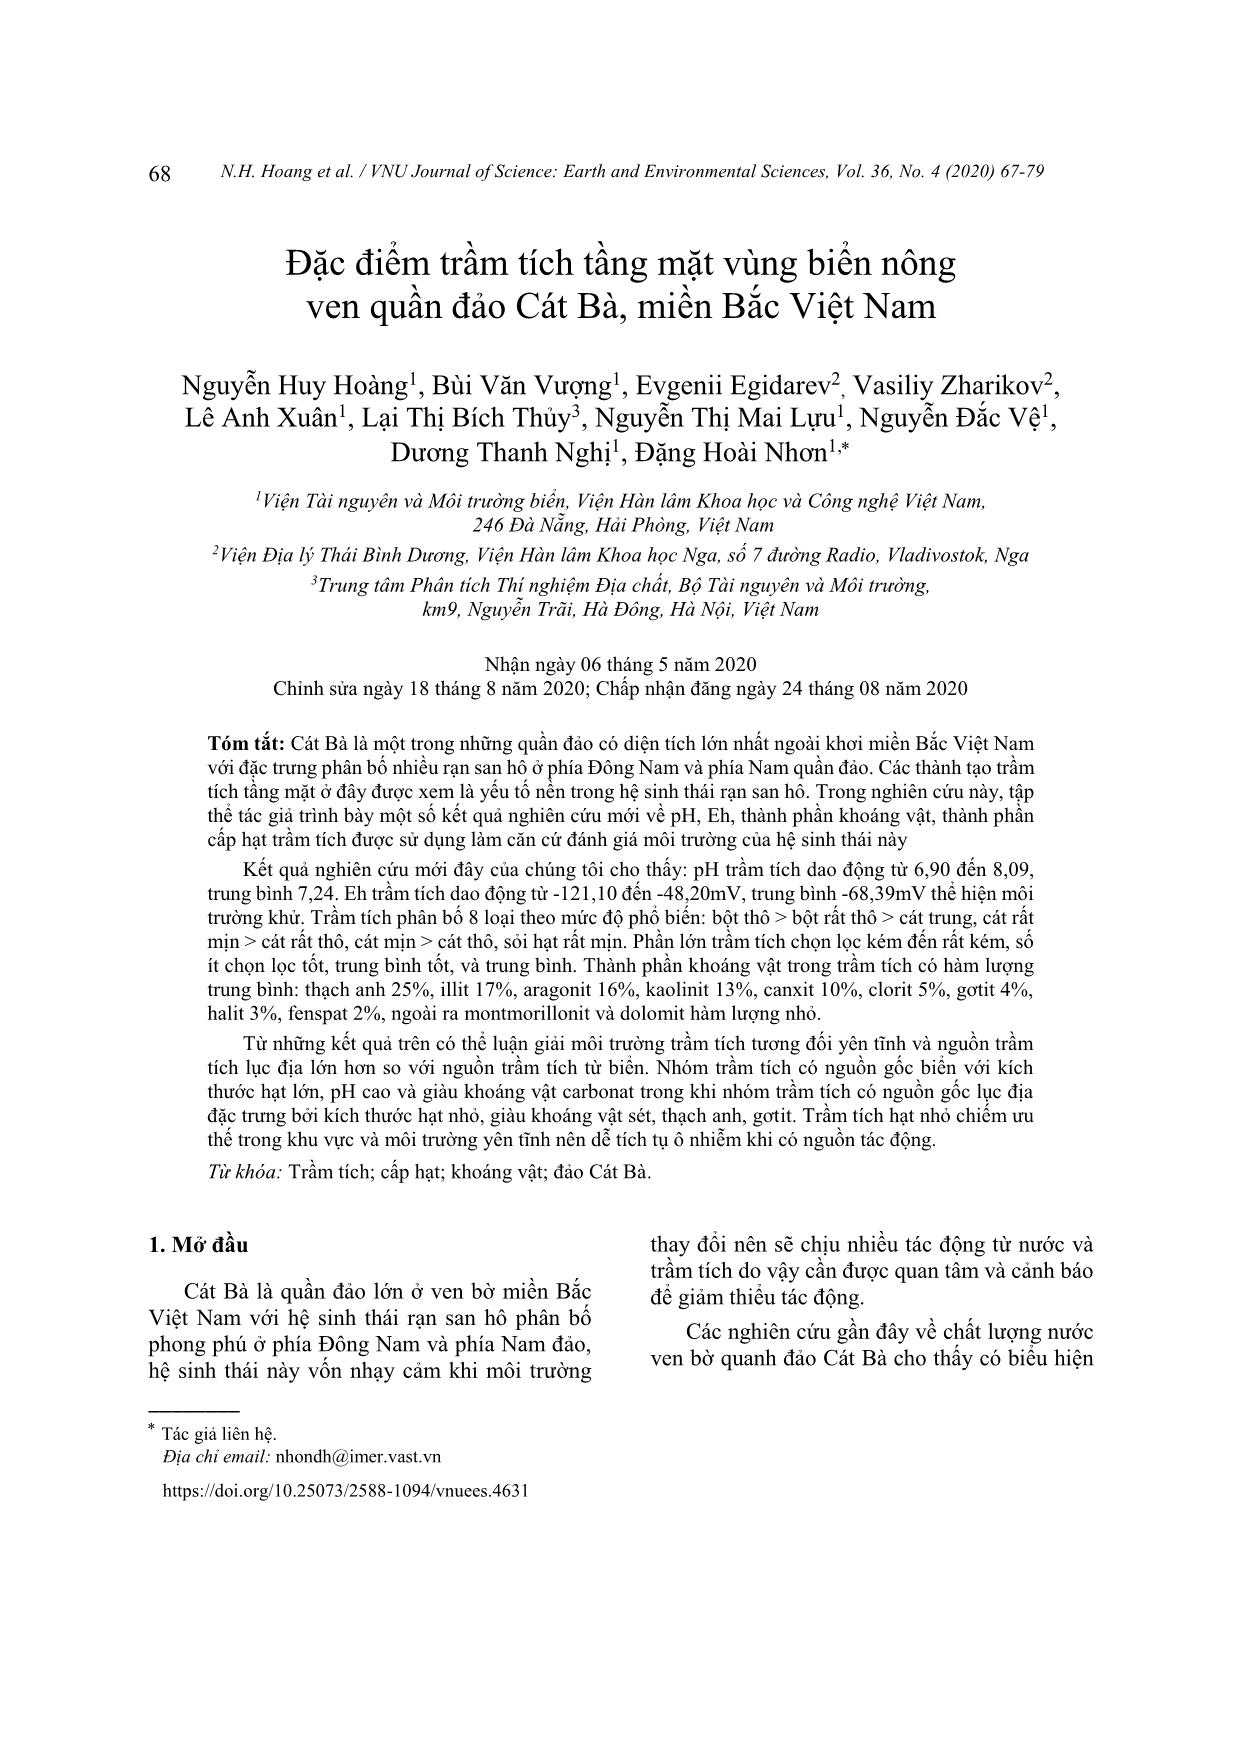 Đặc điểm trầm tích tầng mặt vùng biển nông ven quần đảo Cát Bà, miền Bắc Việt Nam trang 2